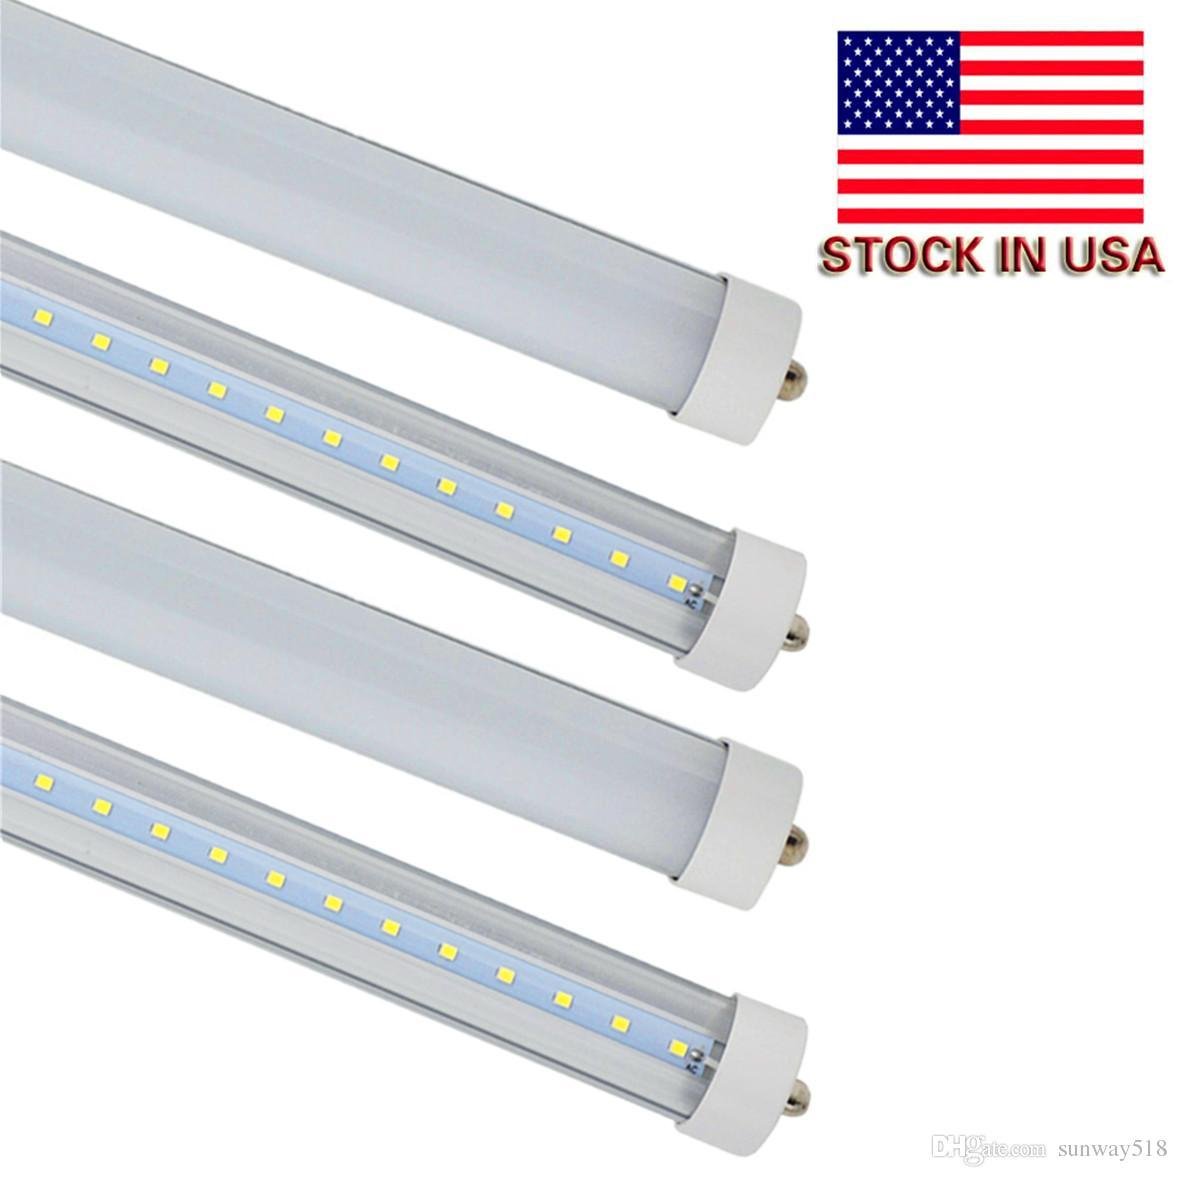 8ft single pin led tube light light fa8 base white color 45w free shipping